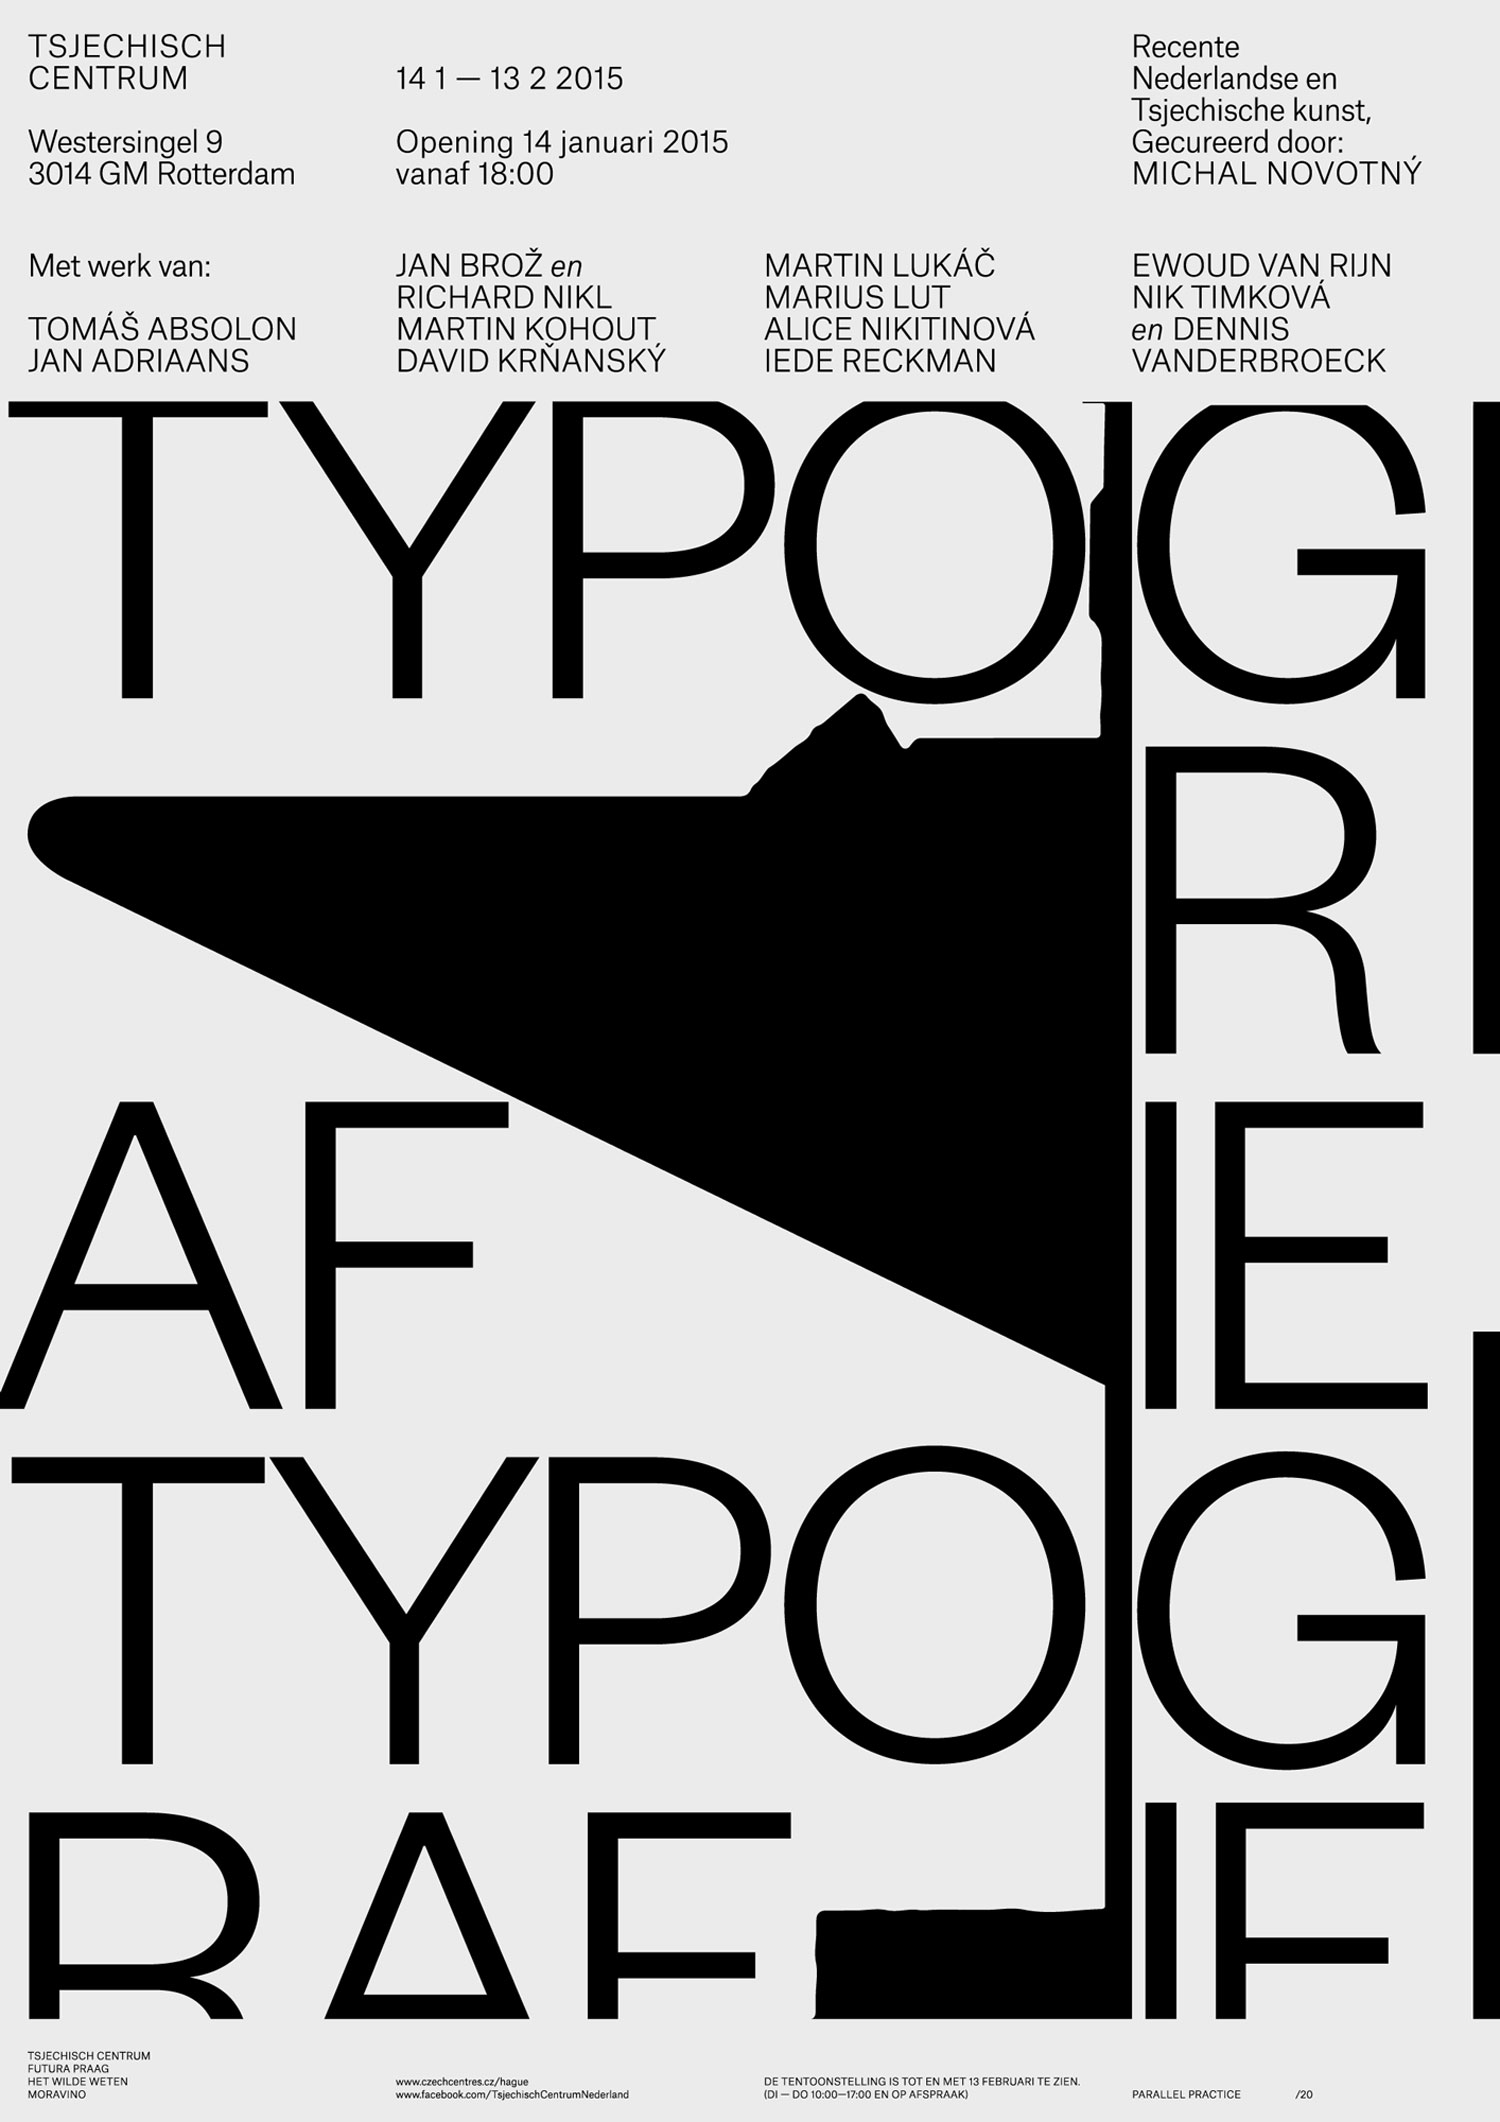 07-TYPOGRAFIE-PP.jpg